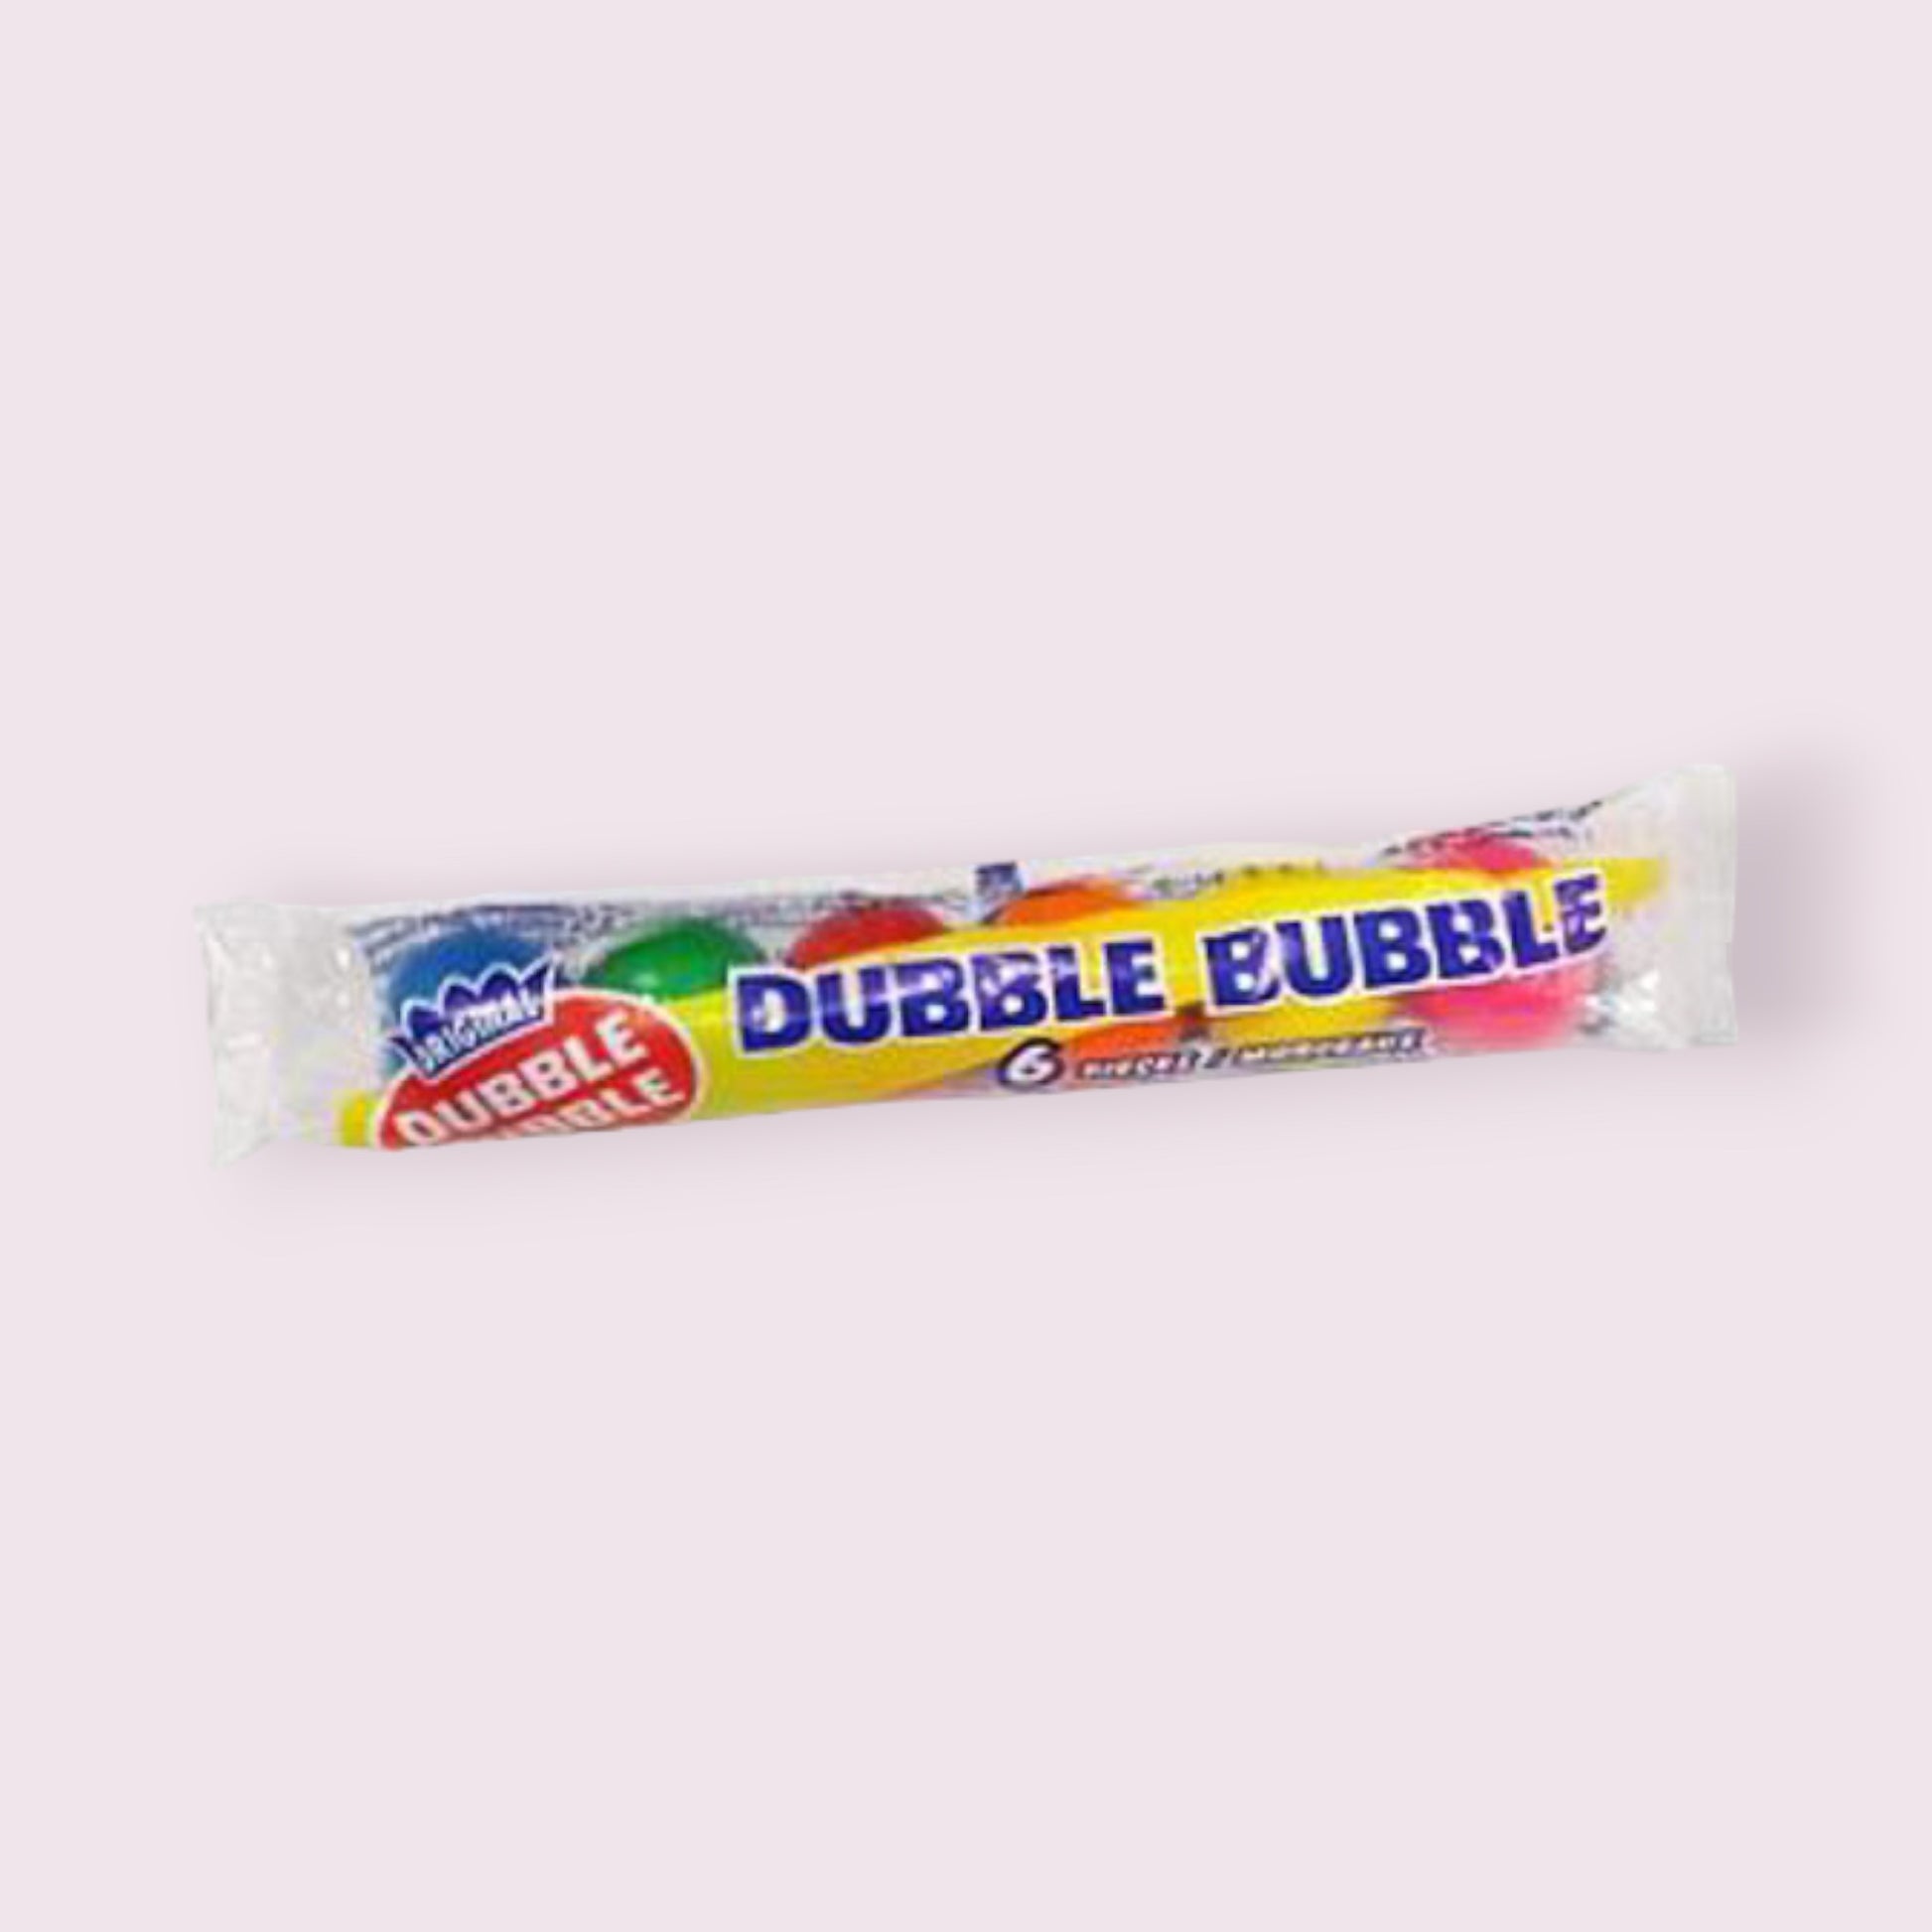 Dubble Bubble Assorted Gumballs Roll 6 pc Gum Pixie Candy Shoppe   